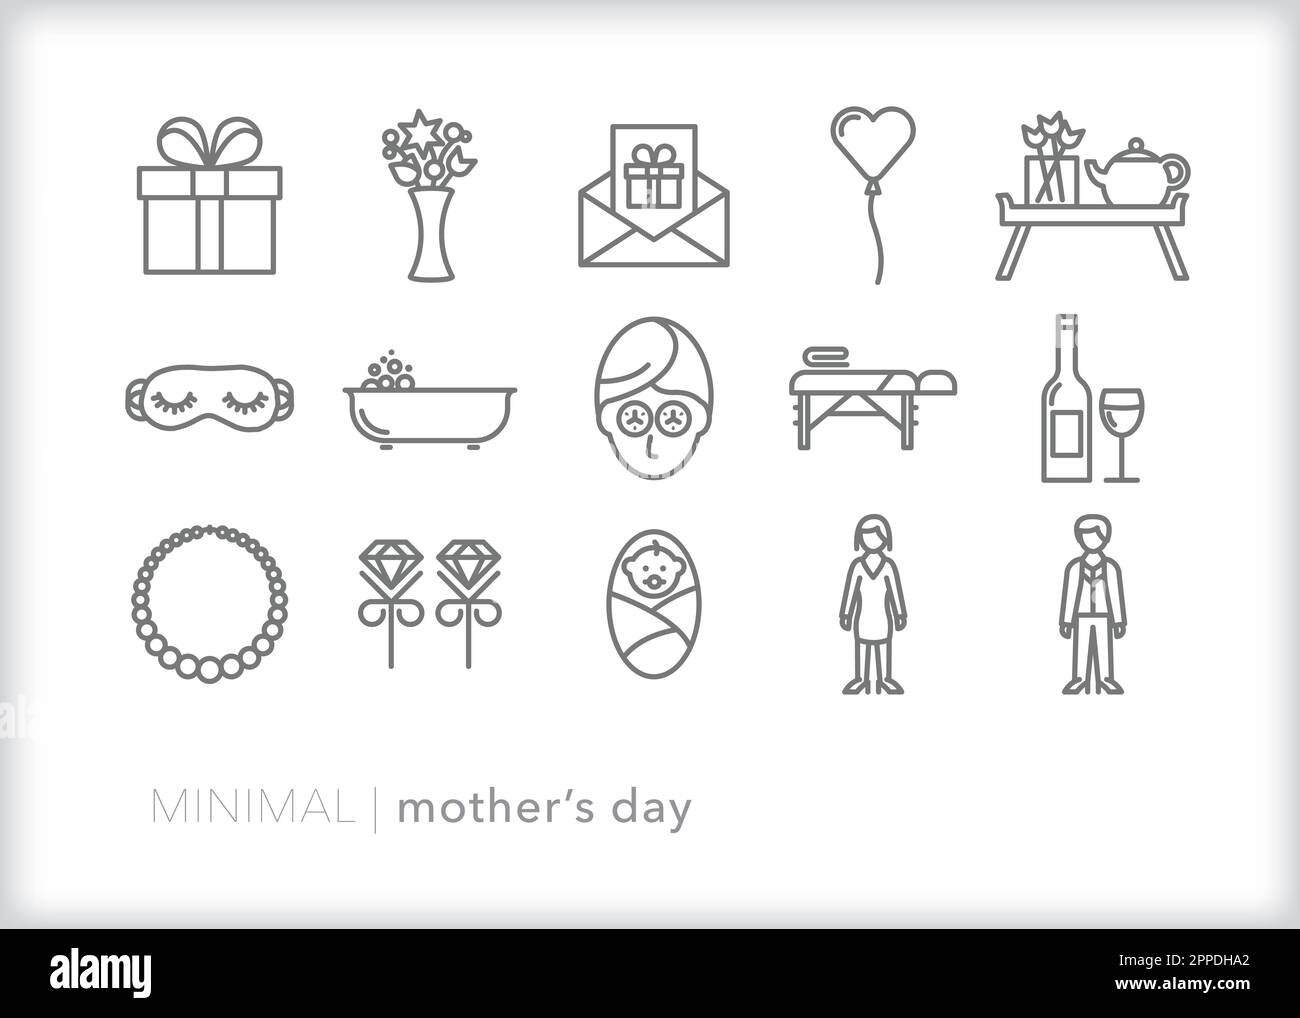 Satz von Zeilensymbolen zum Muttertag mit Themen, Geschenken und Aktivitäten, um Mütter und Großmütter für den Feiertag zu ehren und zu feiern Stock Vektor